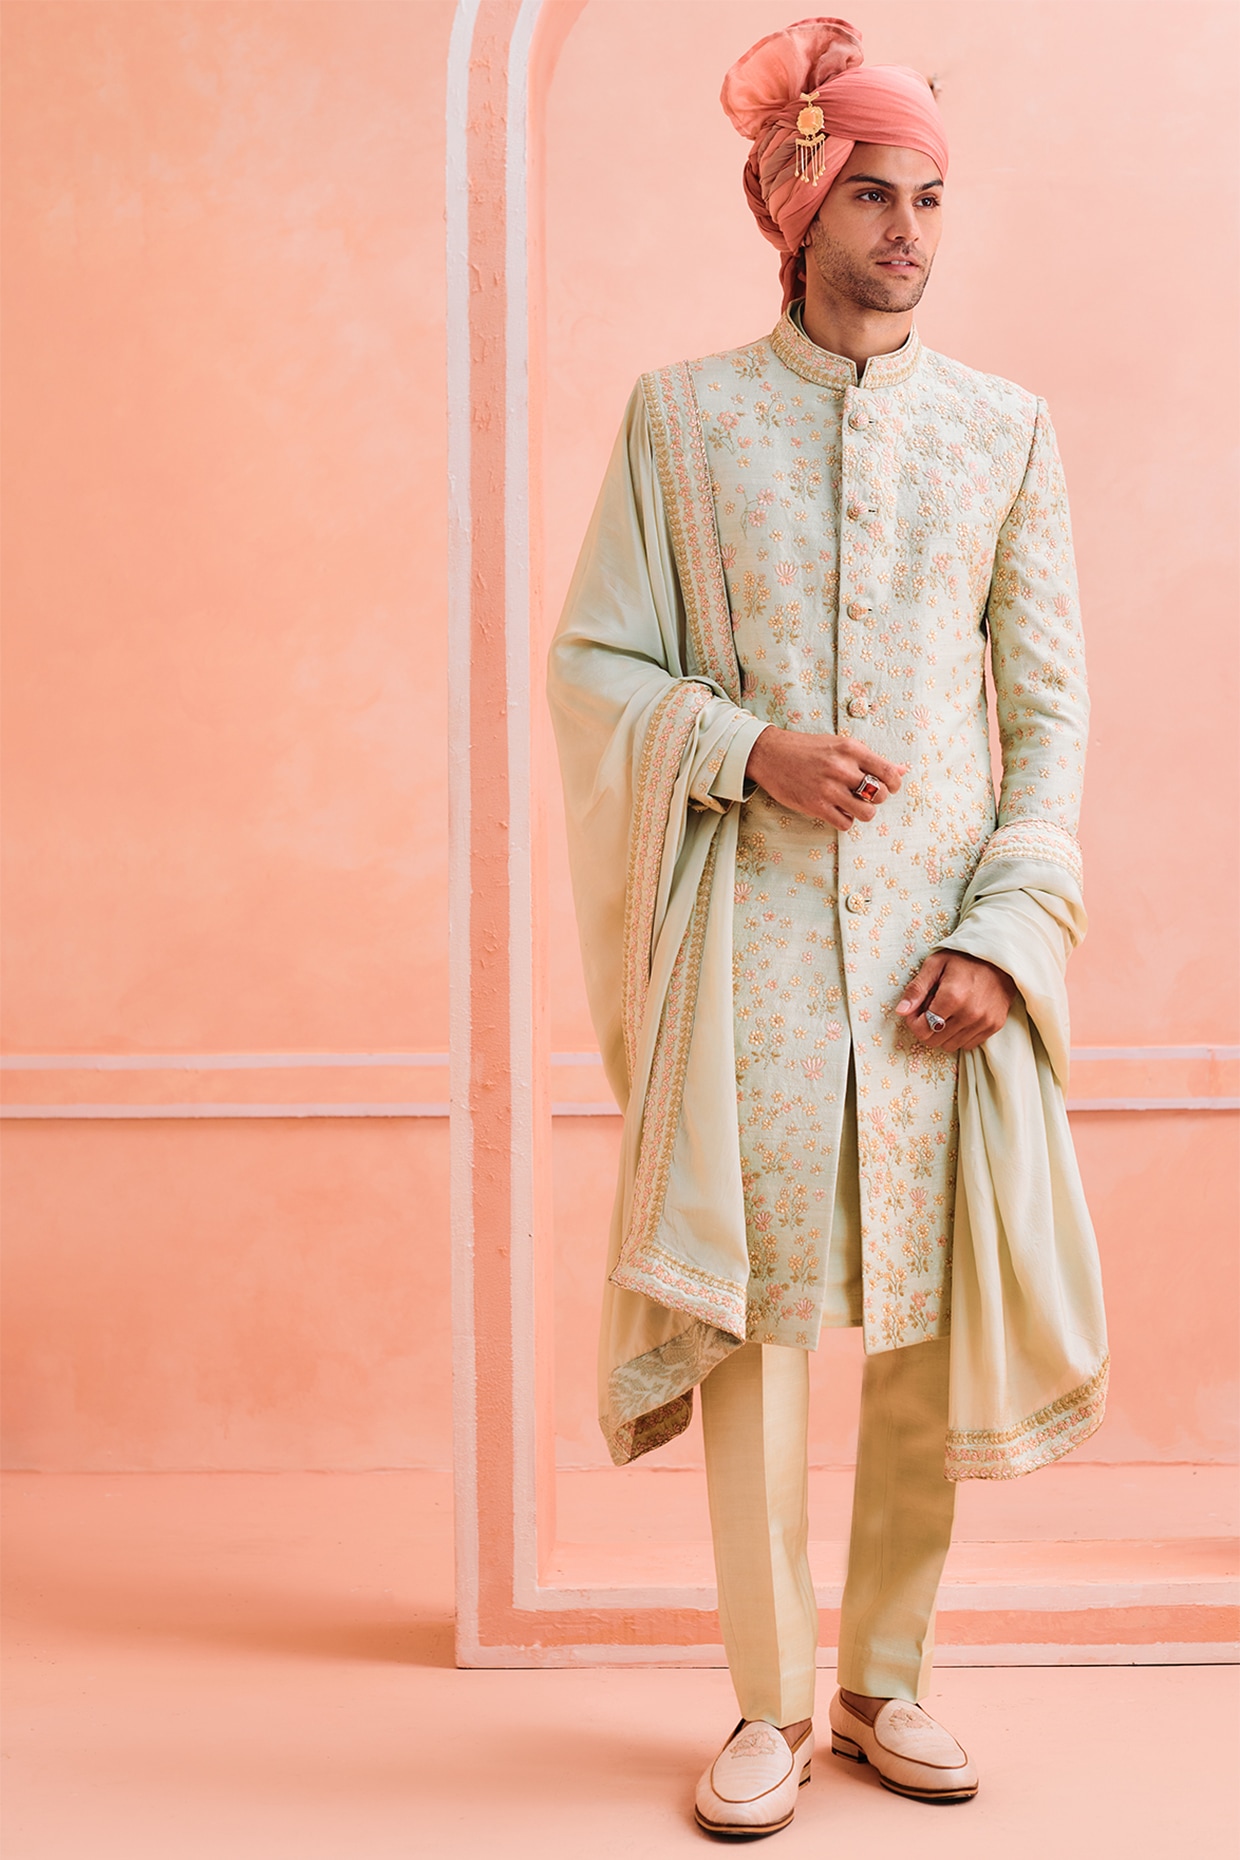 Indian Groom Dress for wedding ⋆ Best Fashion Blog For Men -  TheUnstitchd.com | Wedding dresses men indian, Indian groom dress, Sherwani  for men wedding